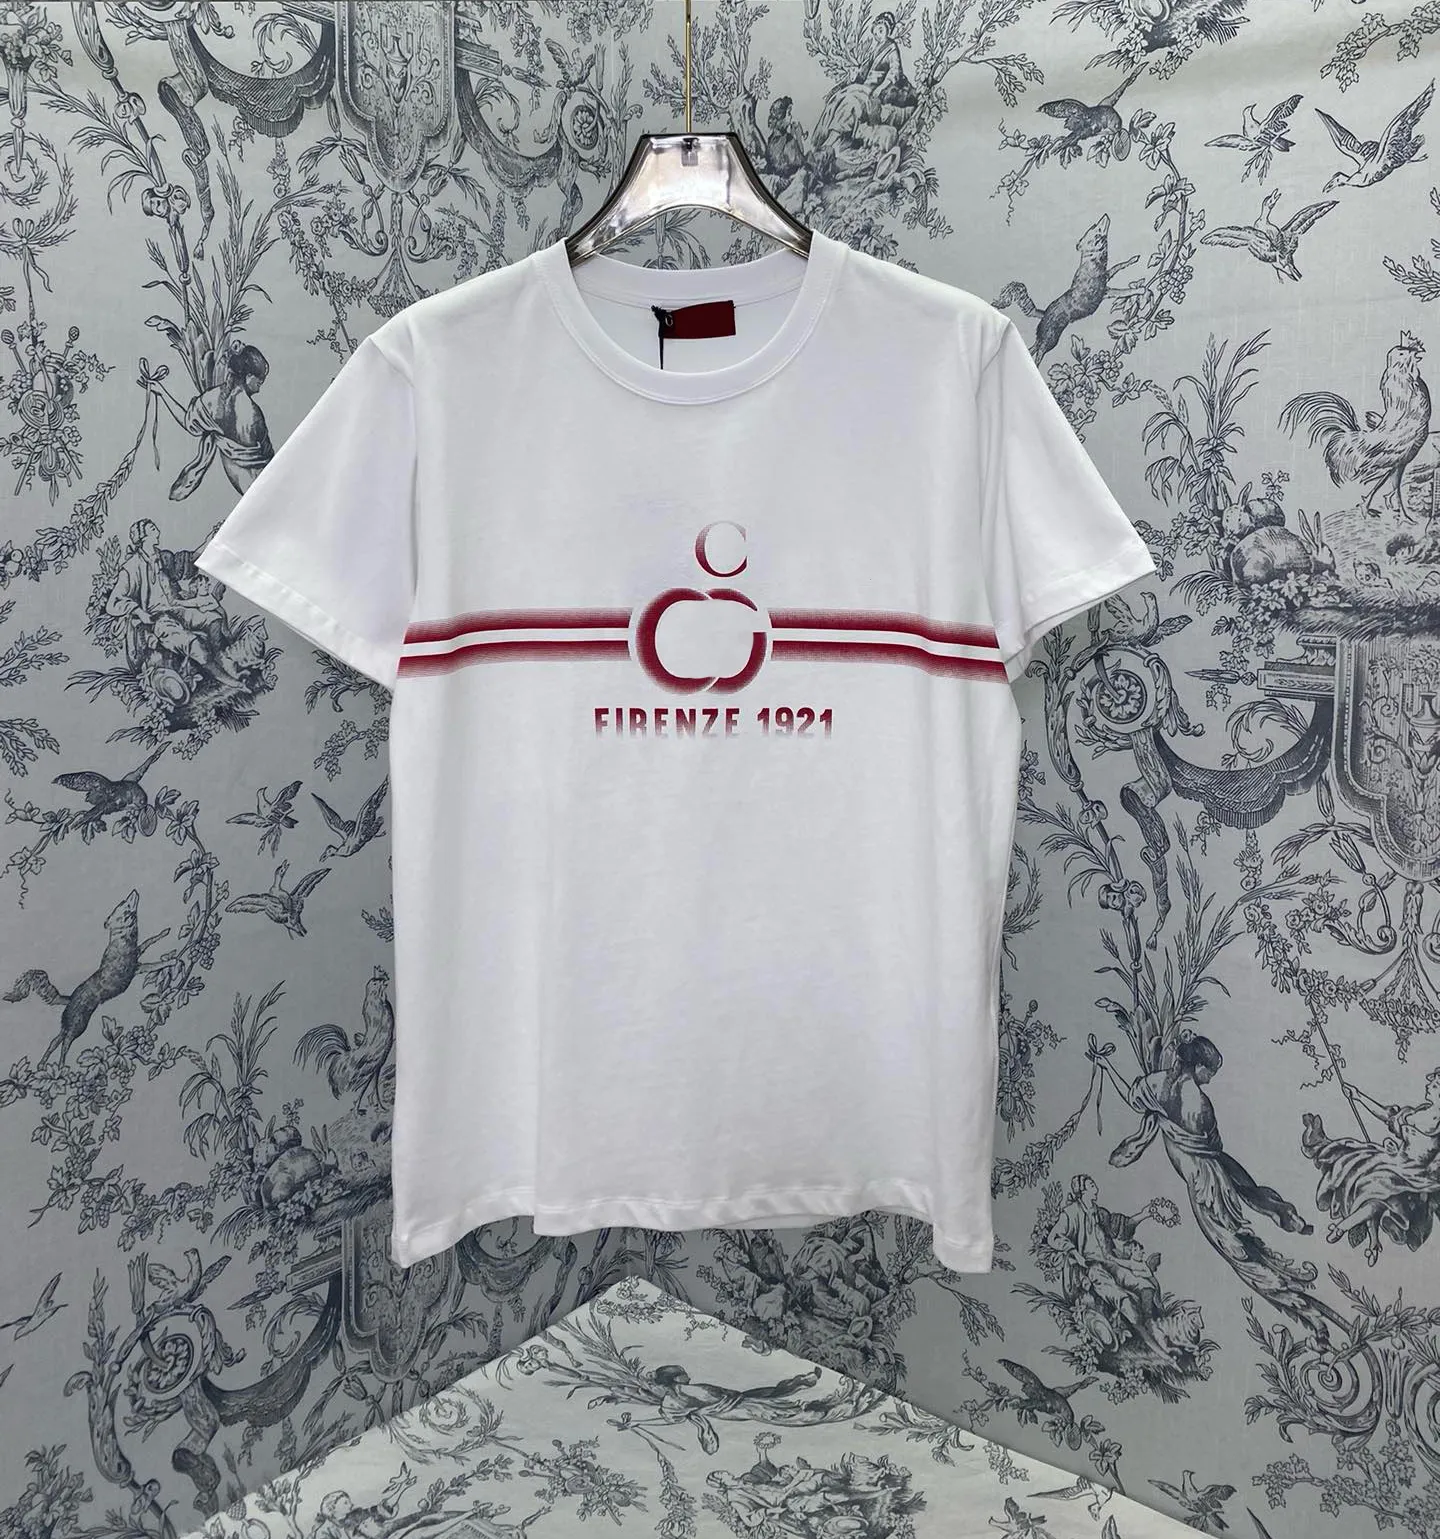 メンズプラスティーポロスTシャツの丸い首刺繍と印刷されたポーラースタイルの夏の摩耗